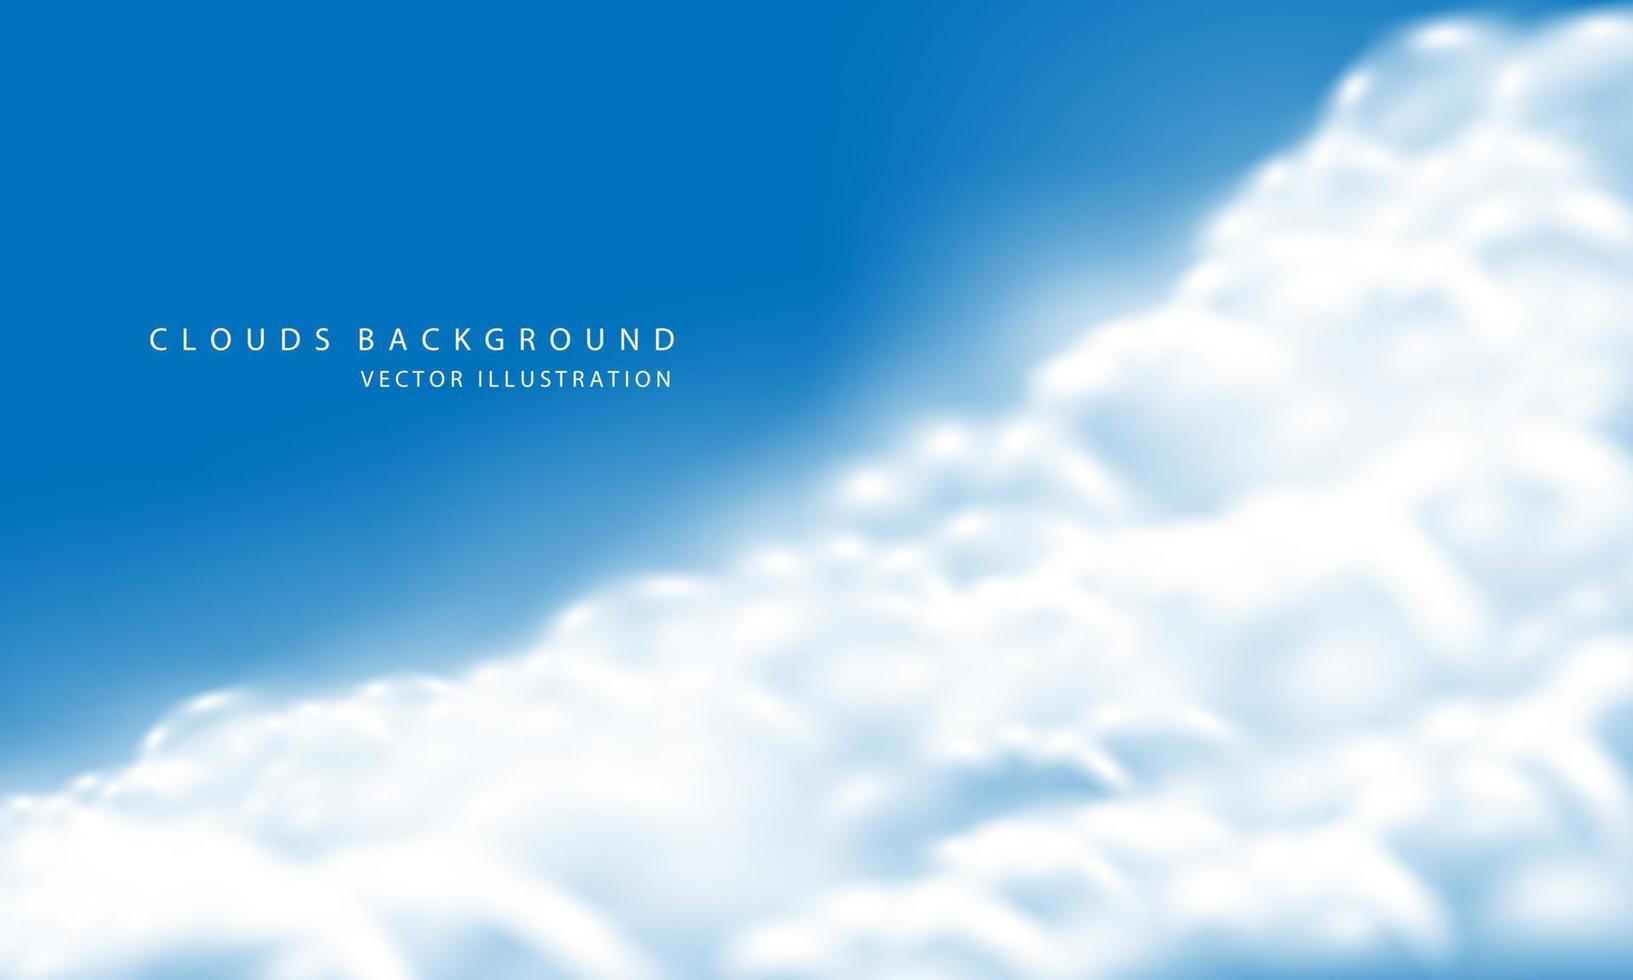 humo de niebla de nube blanca realista en vector de fondo de espacio en blanco de cielo azul